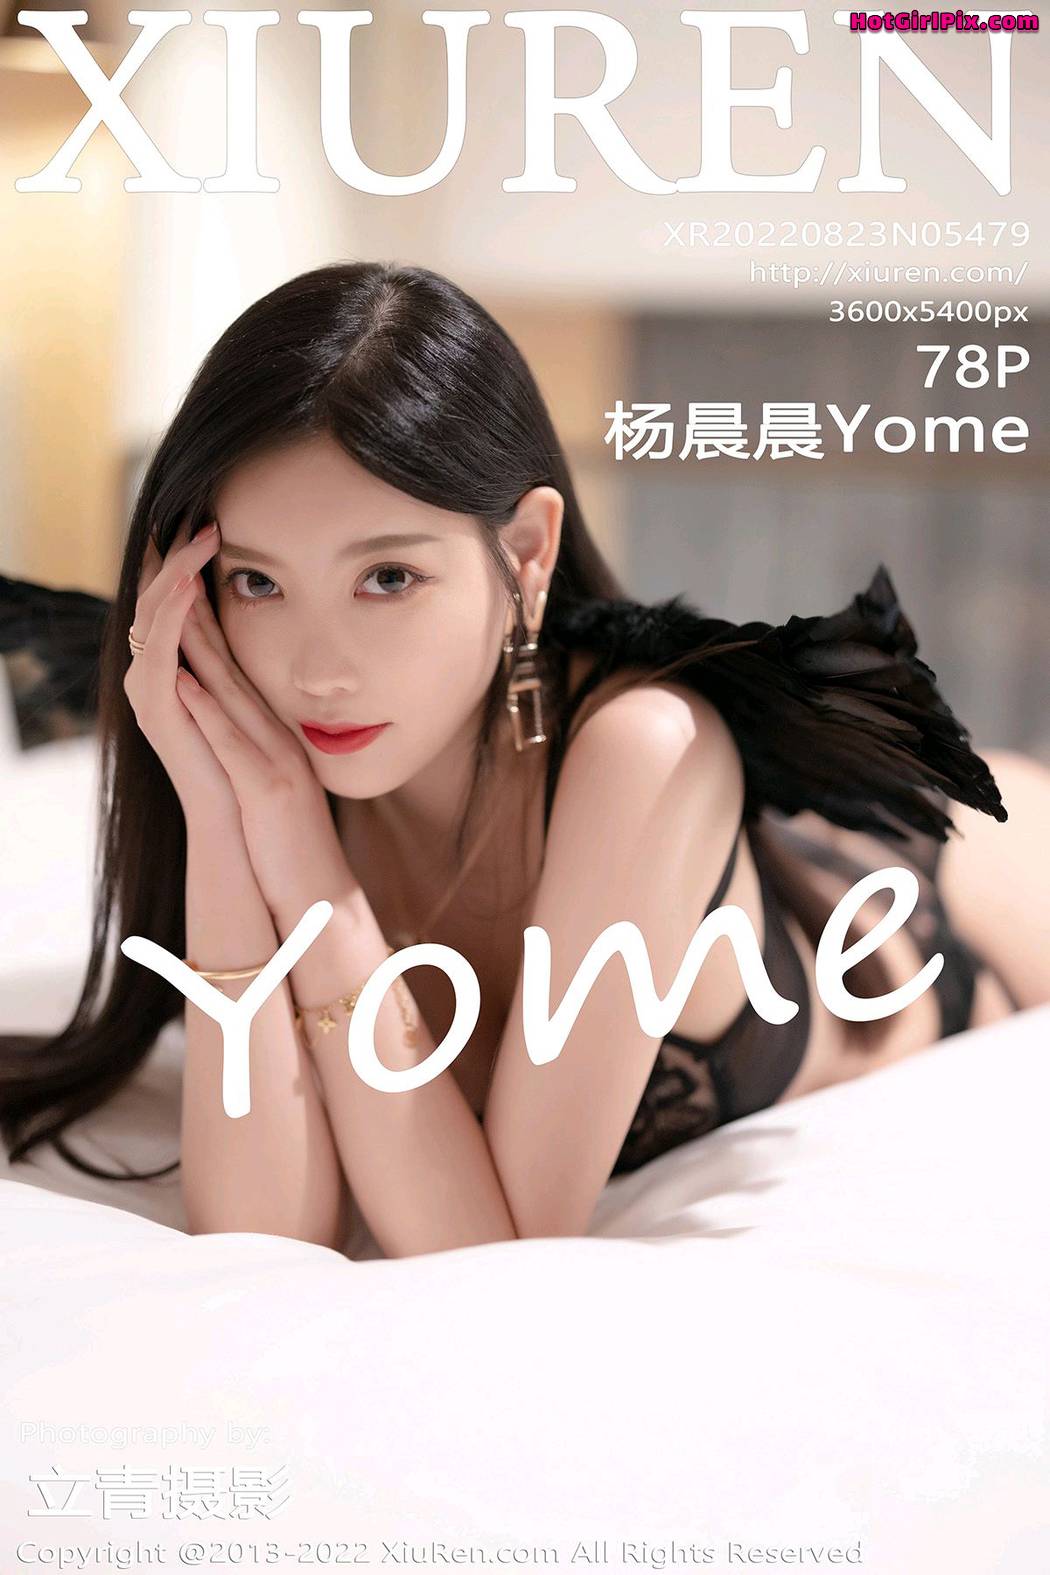 [XIUREN] No.5479 Yang Chen Chen 杨晨晨Yome (Yang Chen Chen 杨晨晨sugar) Cover Photo